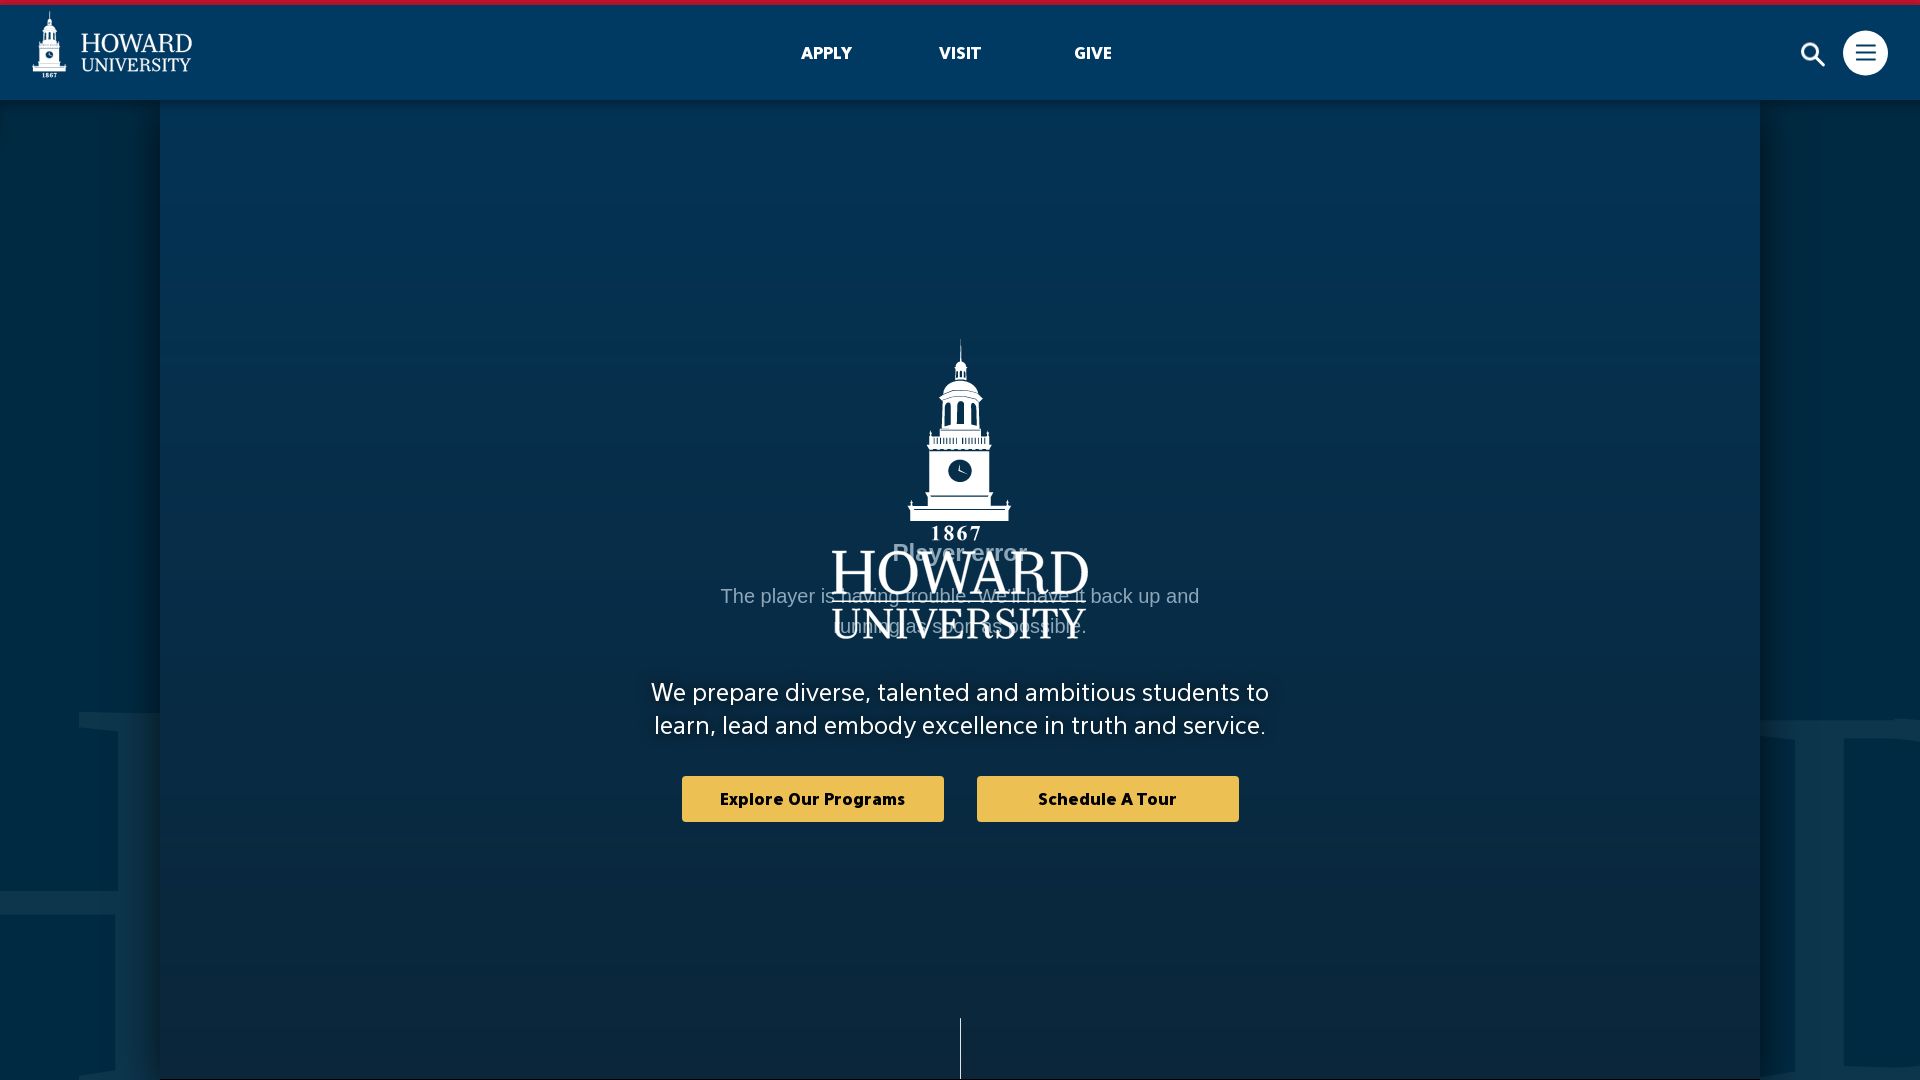 État du site web howard.edu est   EN LIGNE